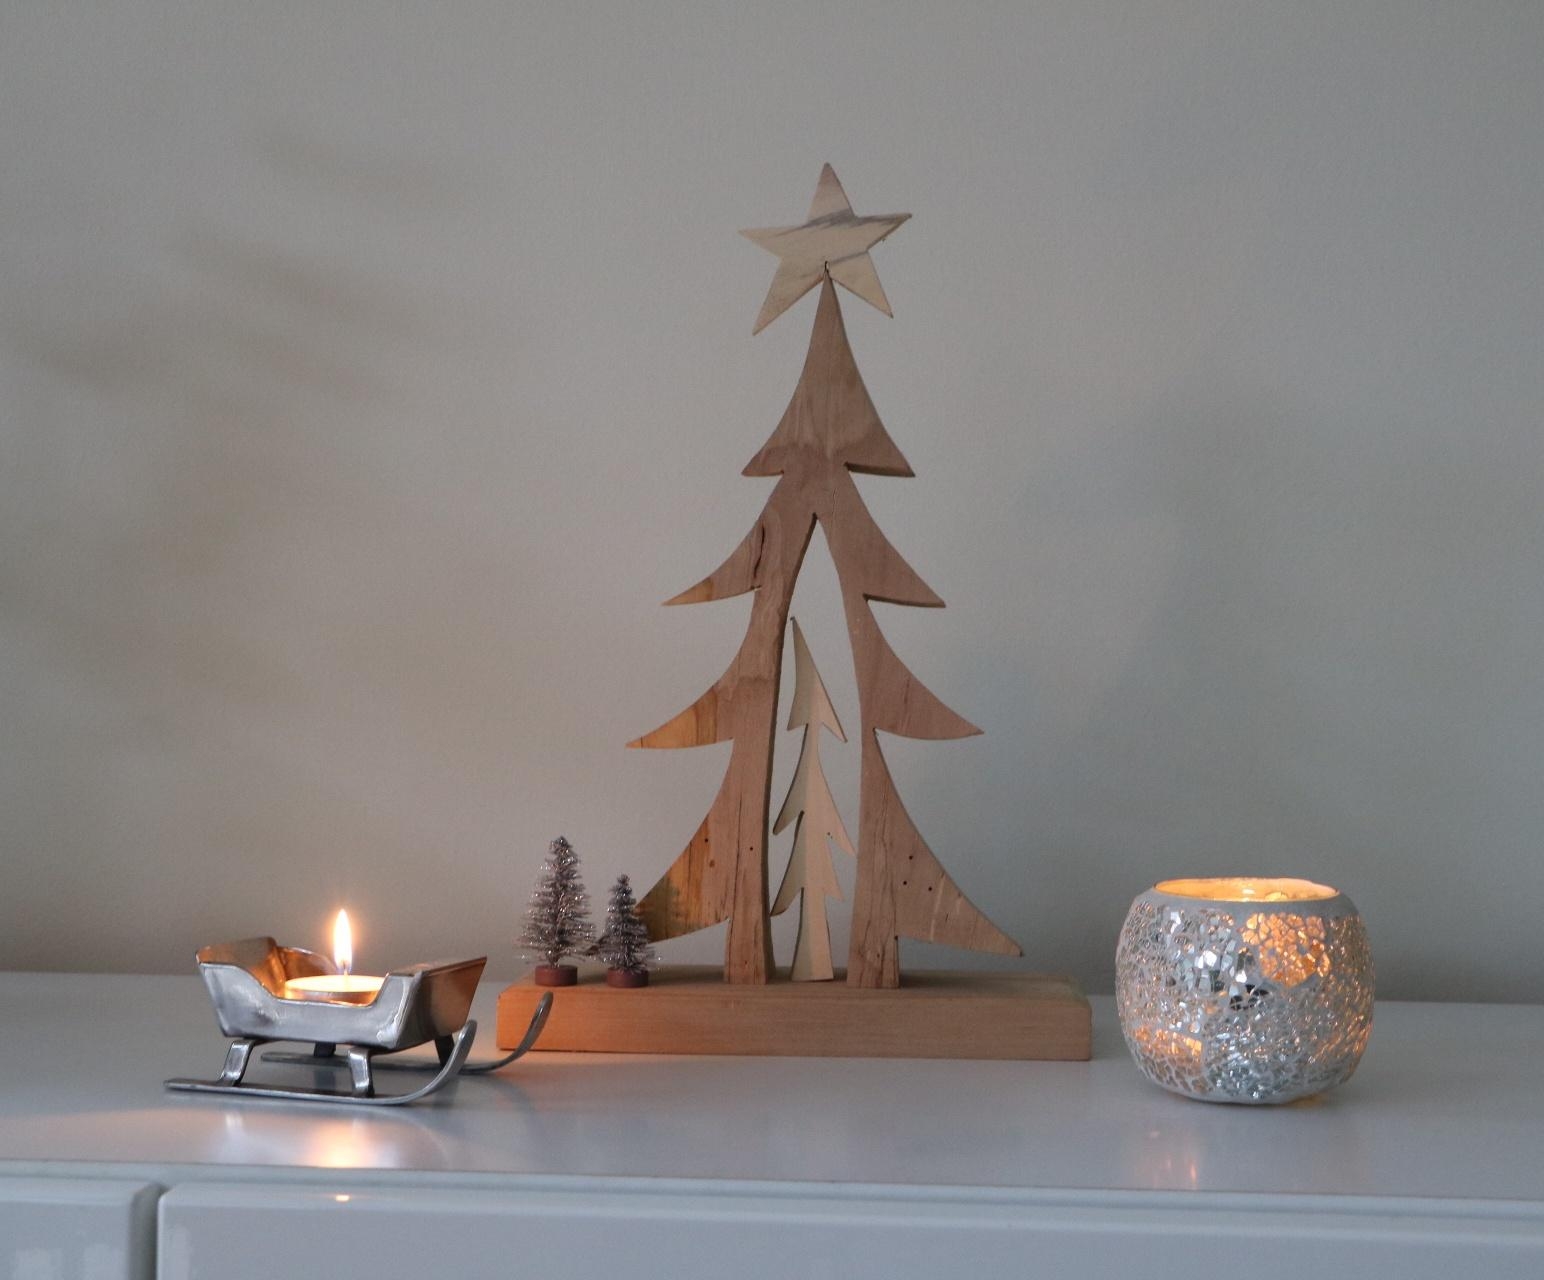 Wünsche euch eine schöne Vorweihnachtszeit! ♡
#christmas #tannenbaumliebe #gemütlich #deko